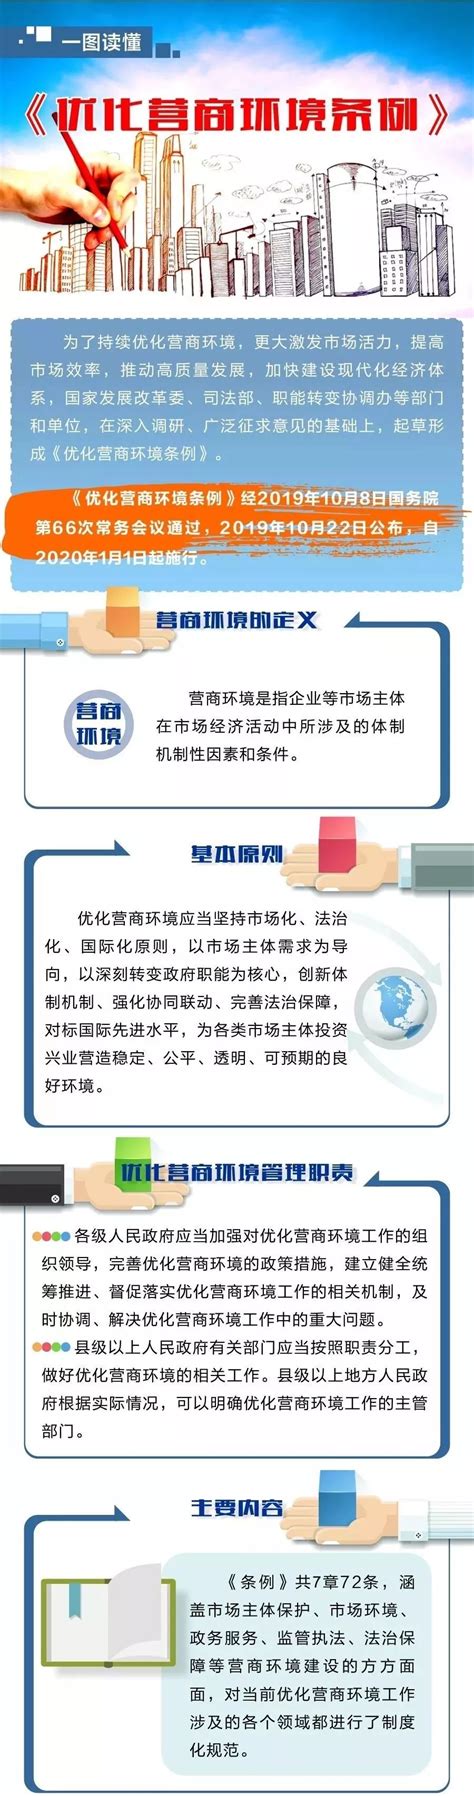 简阳市政务服务中心税务窗口主动作为 持续优化办税环境 提升服务质效